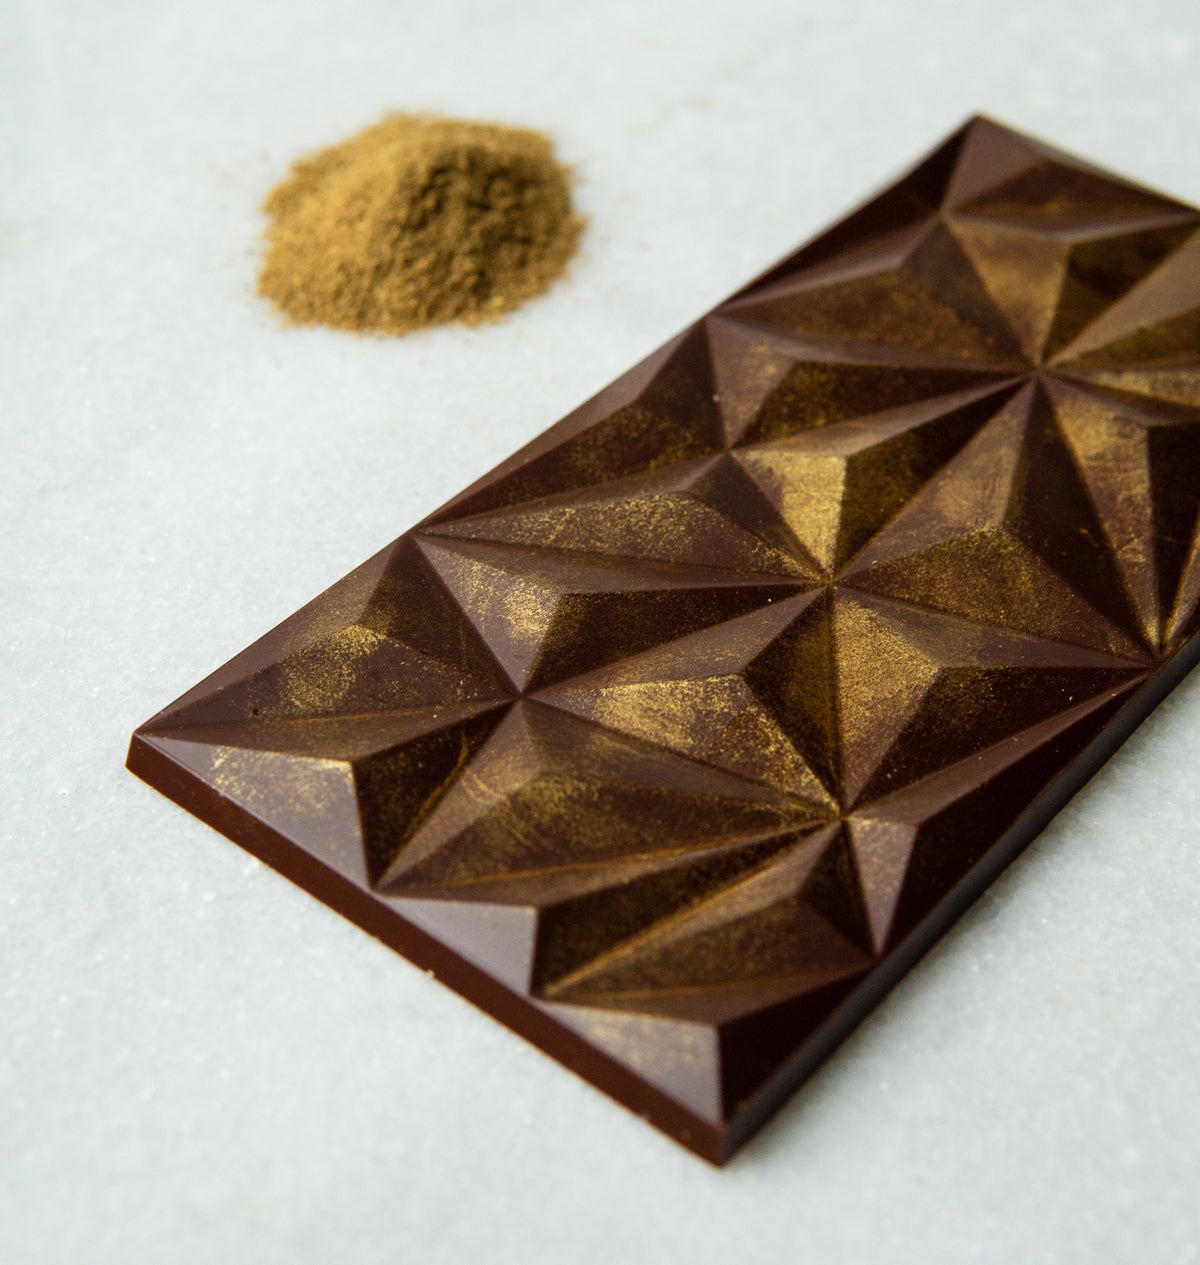 Masala Chai 65% Dark Chocolate